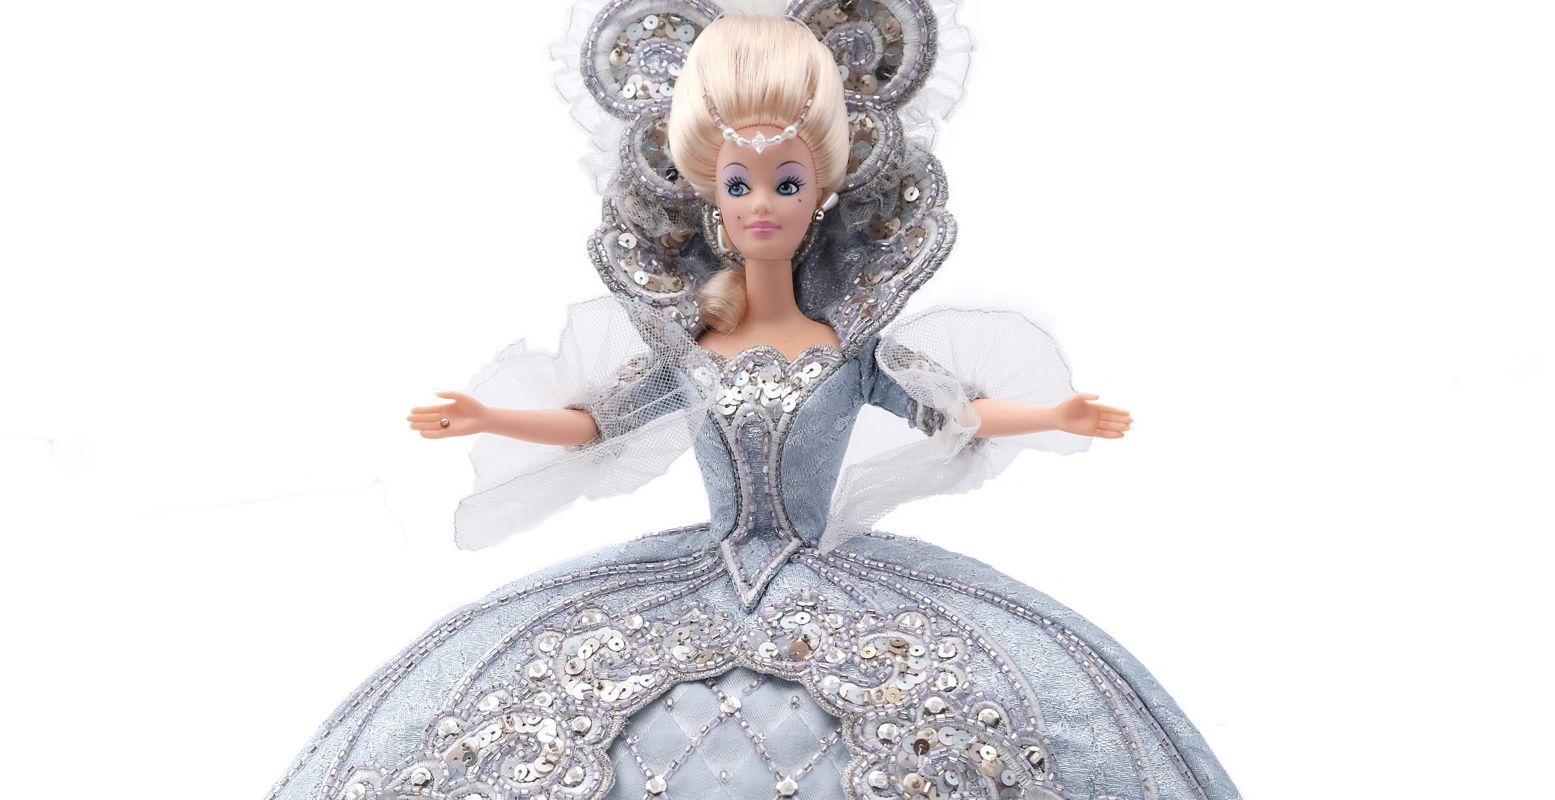 Barbie is klaar voor haar 65ste verjaardag in Stedelijk Museum Almelo. Bezoek haar feestje in de expositie Always a Doll Moment. Foto: Stedelijk Museum Almelo